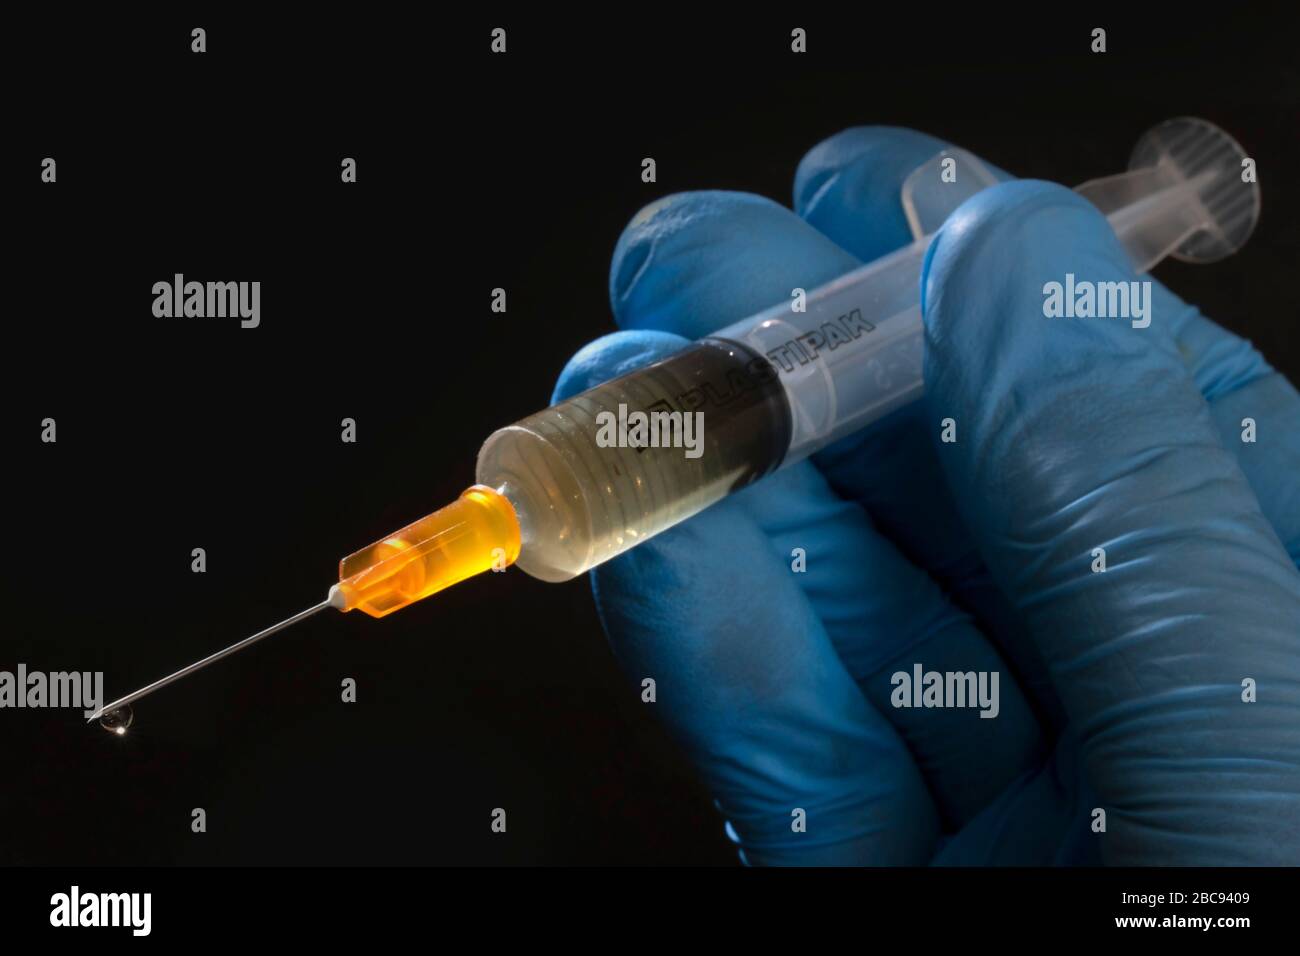 Siringa ipodermica e ago, tenuti da una mano chirurgica blu e utilizzati per somministrare vaccini Foto Stock